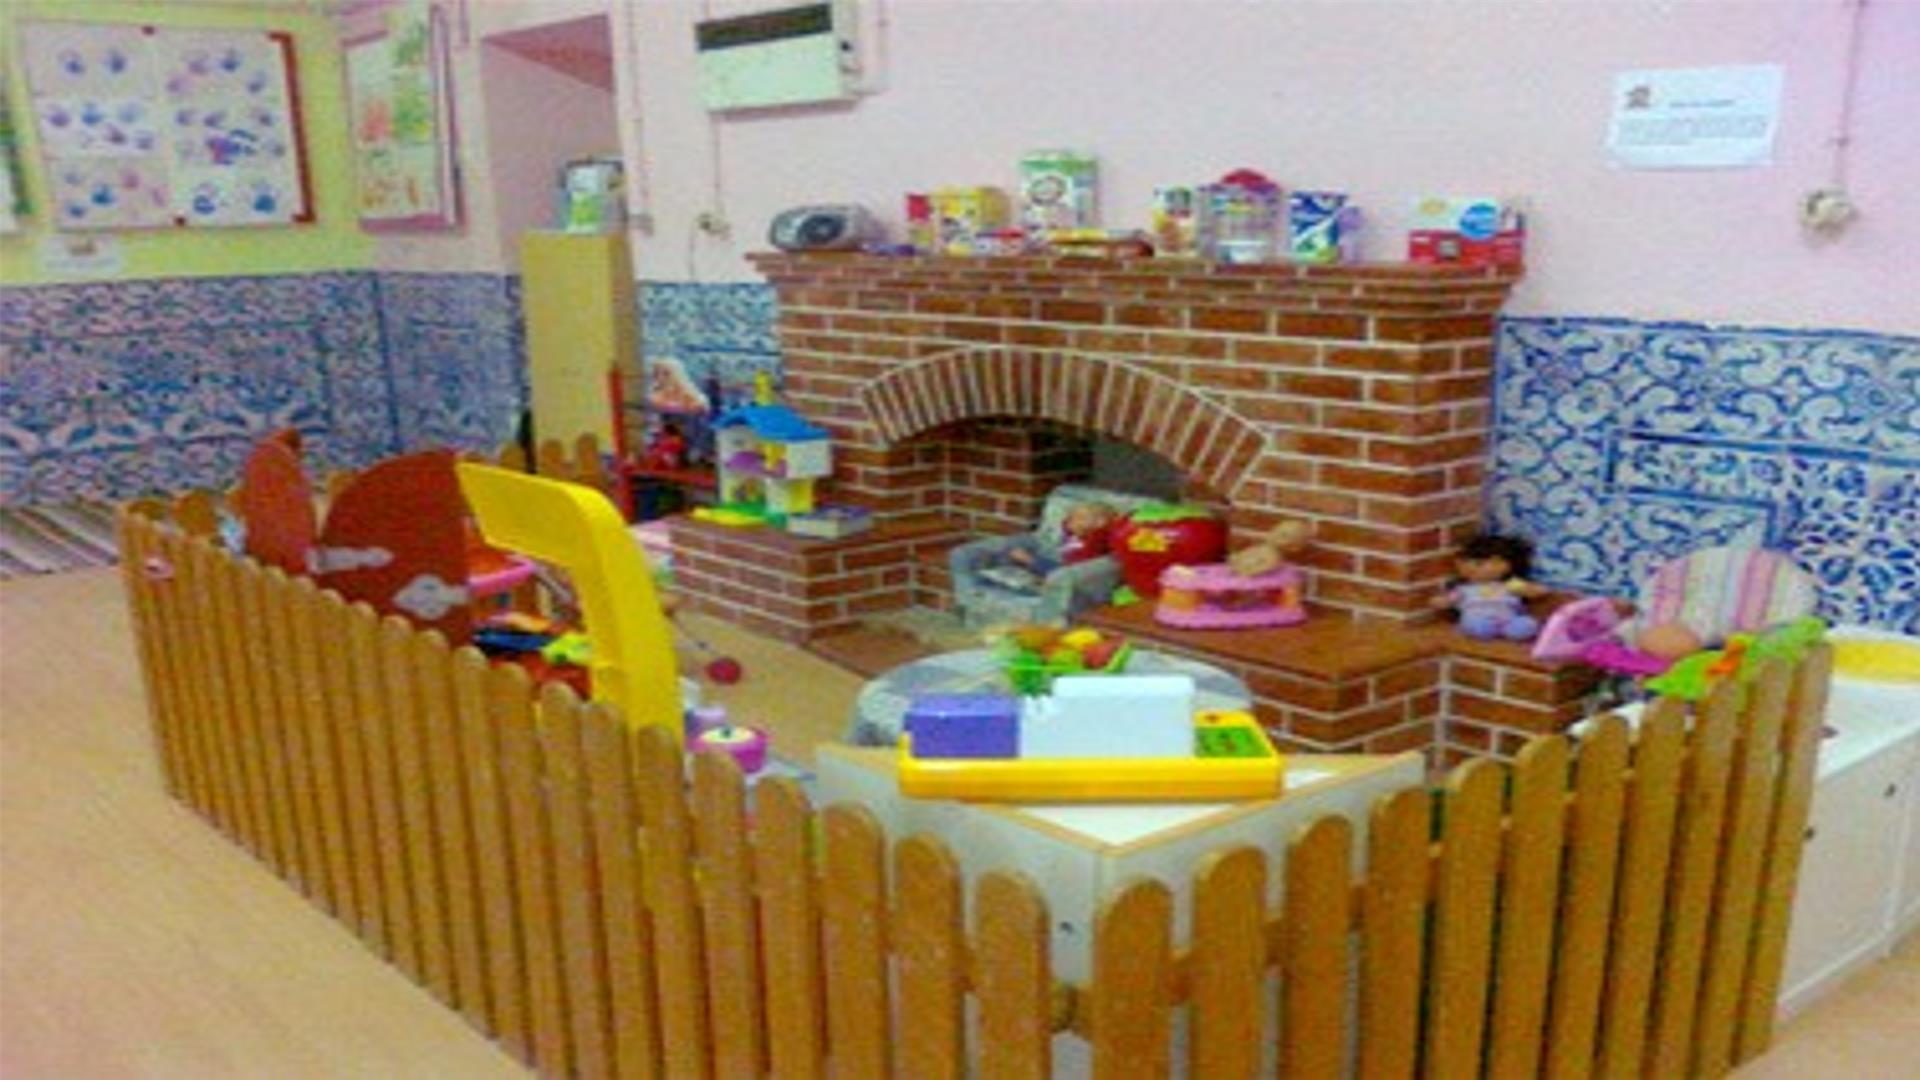 AIPICA - Associação de Iniciativas Populares para a Infância do Concelho de Almada - Creche e Jardim Infância do Pragal